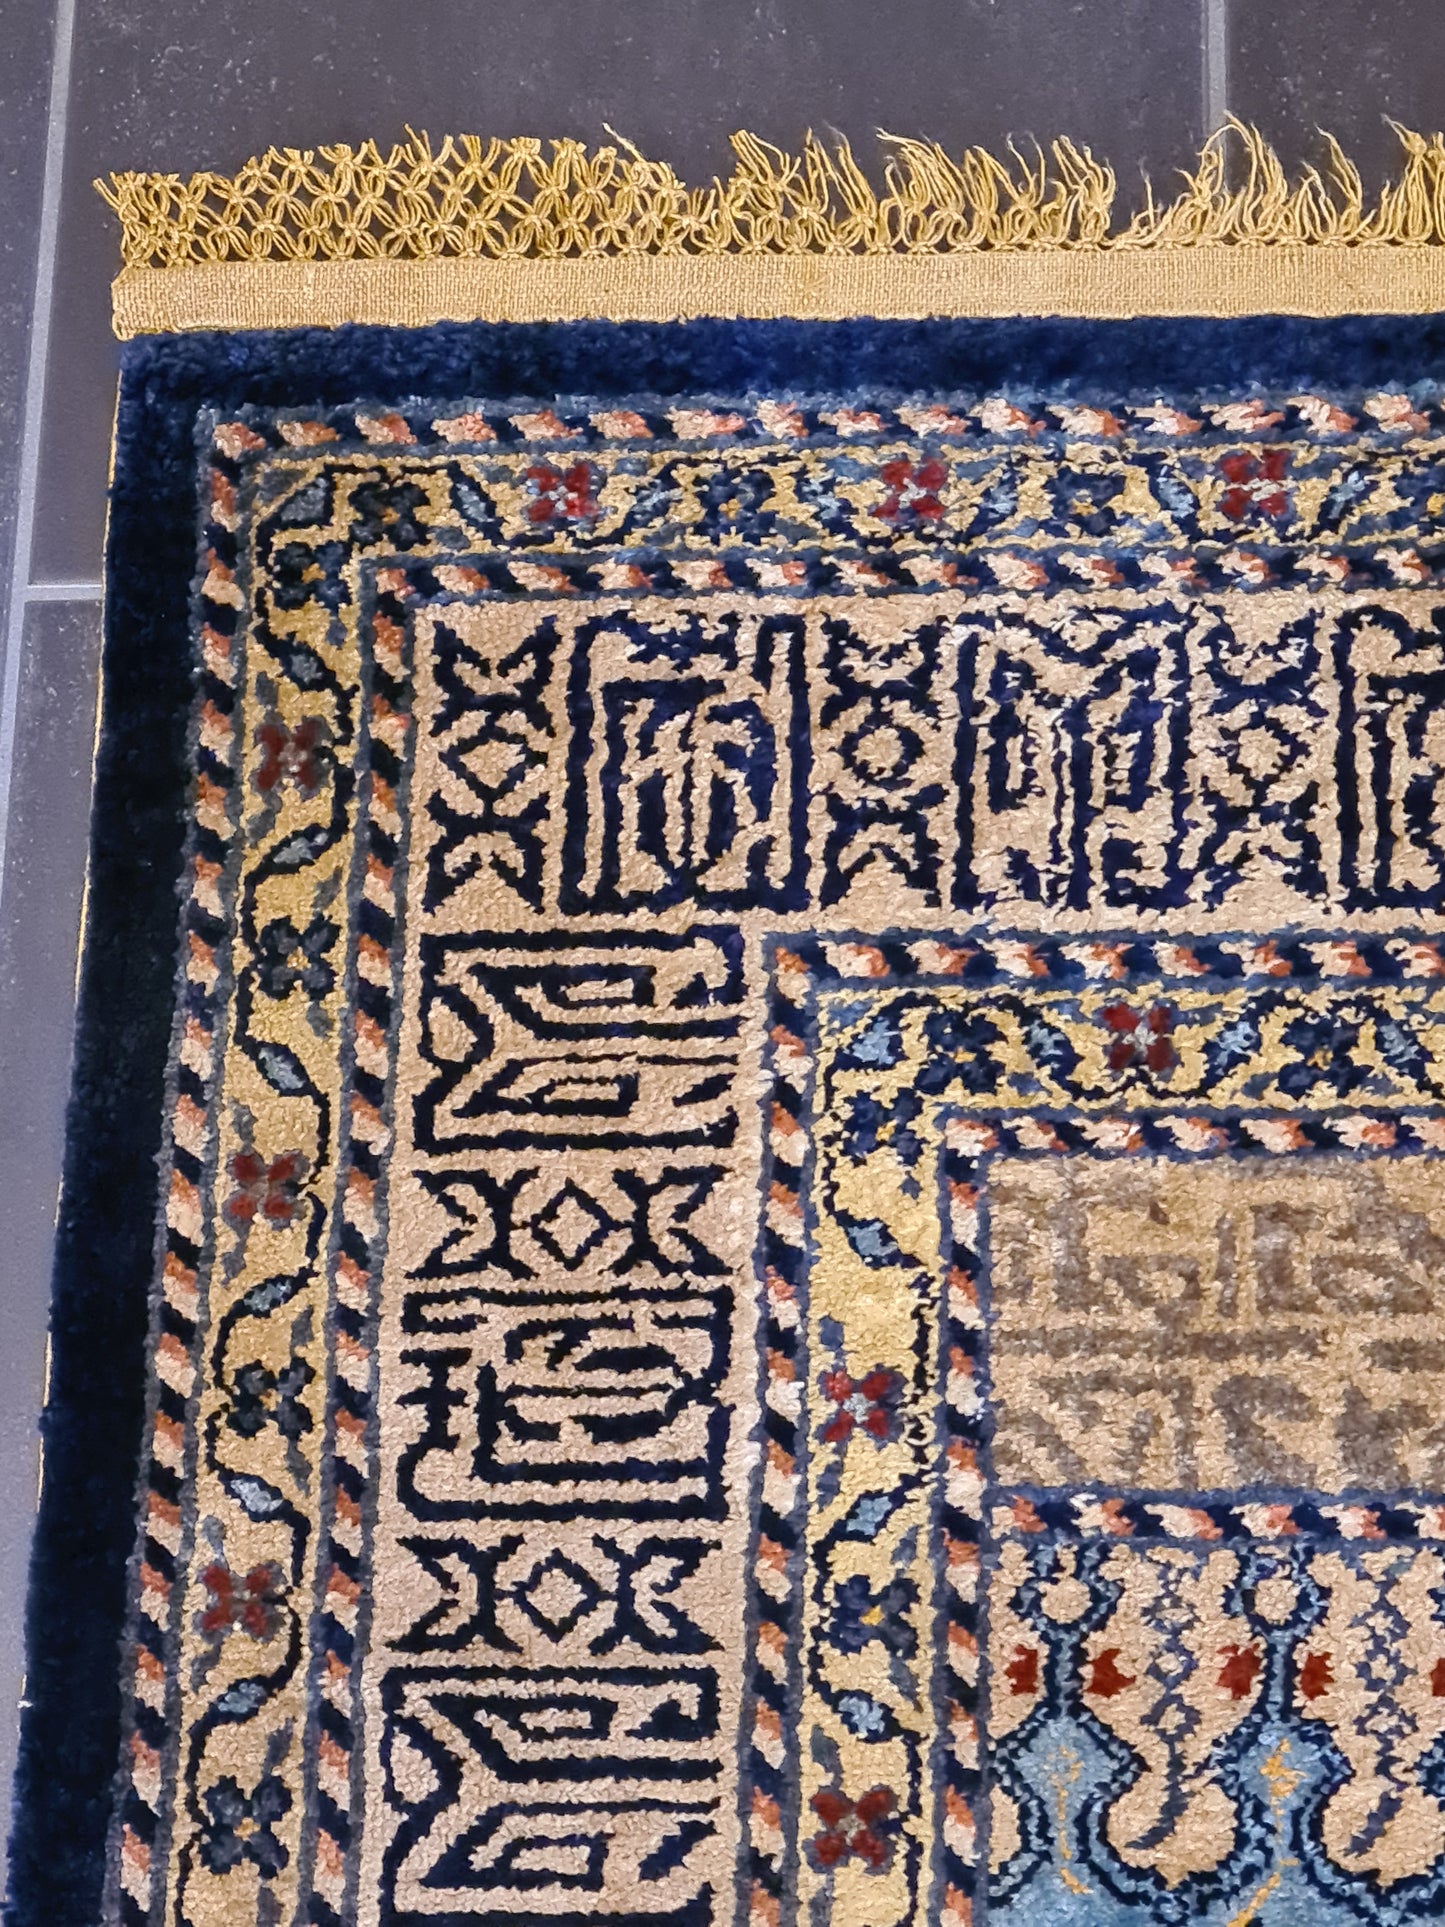 Feiner Seidenteppich aus China Gebetsteppich für Sammler 137x88cm